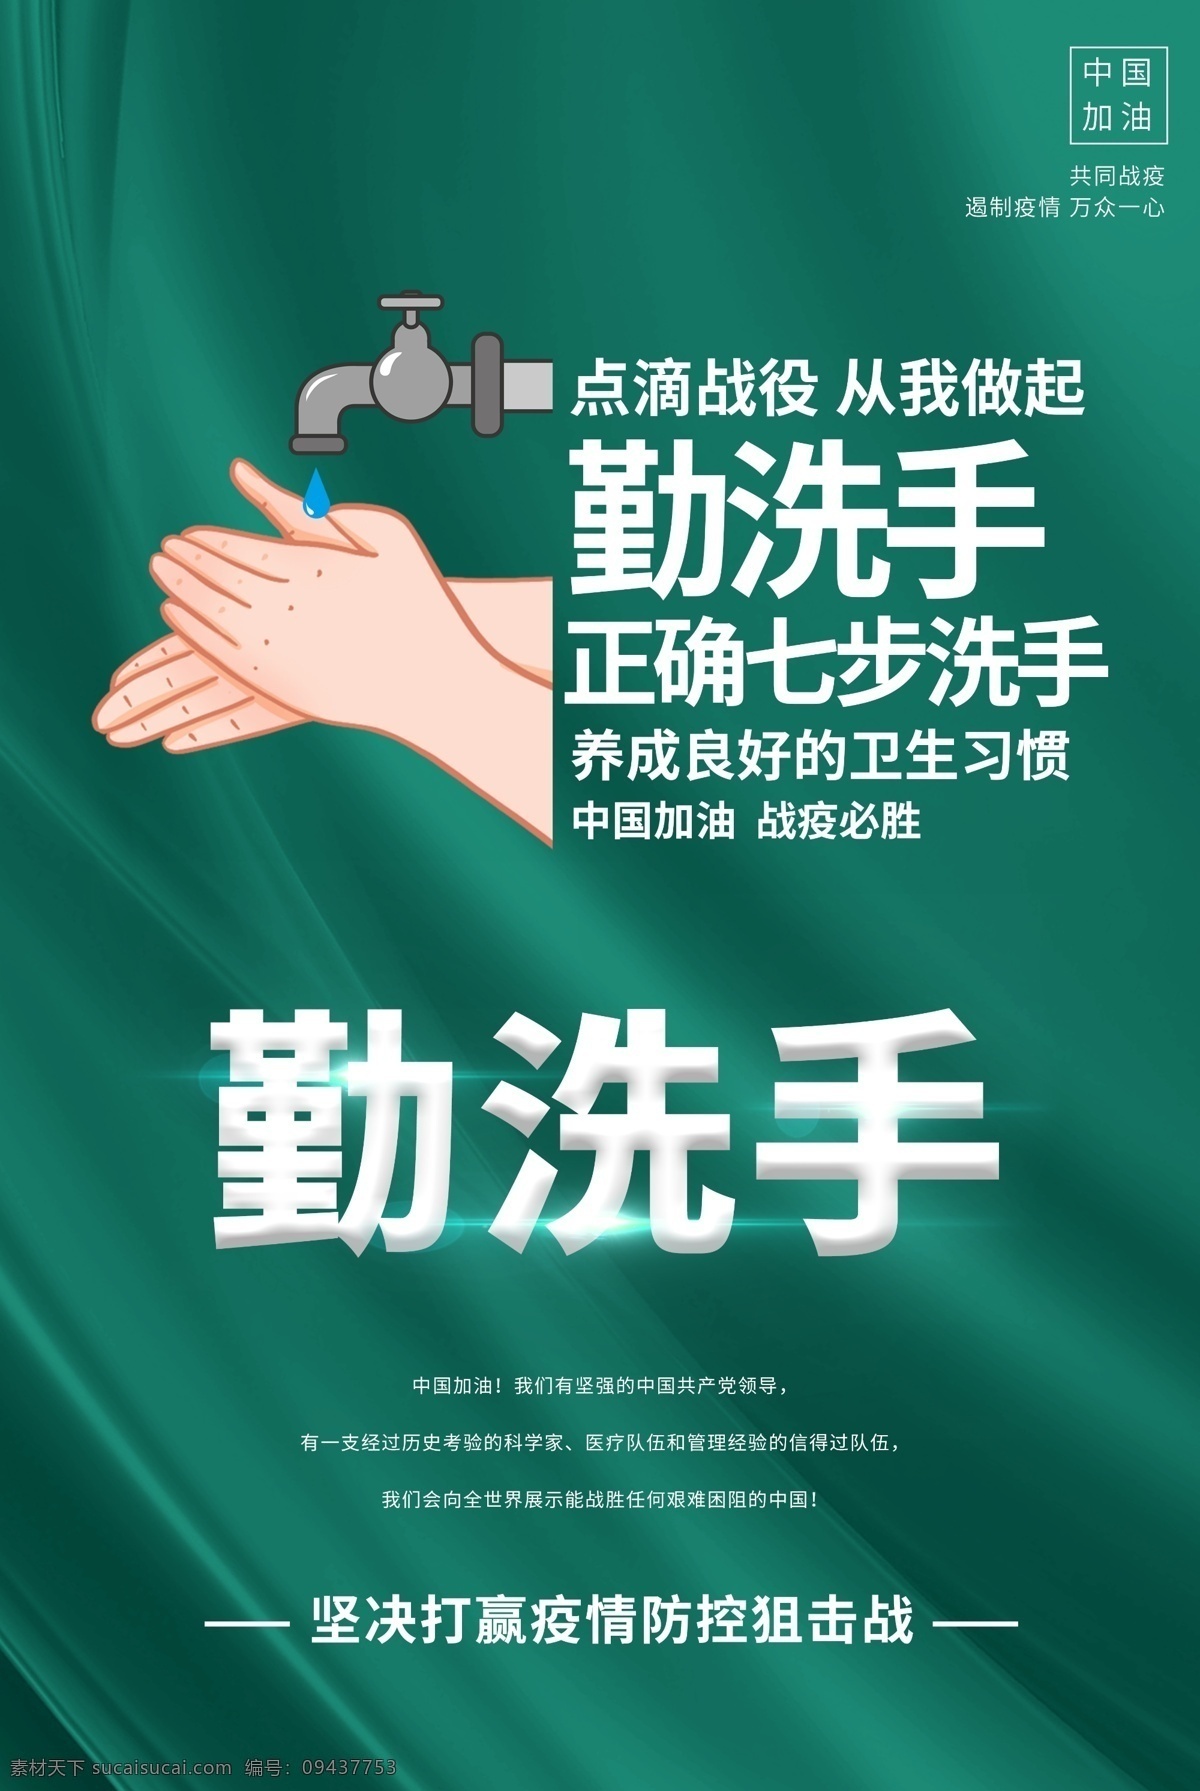 勤 洗手 七 步 卫生 绿色 清新 海报 勤洗手 七步